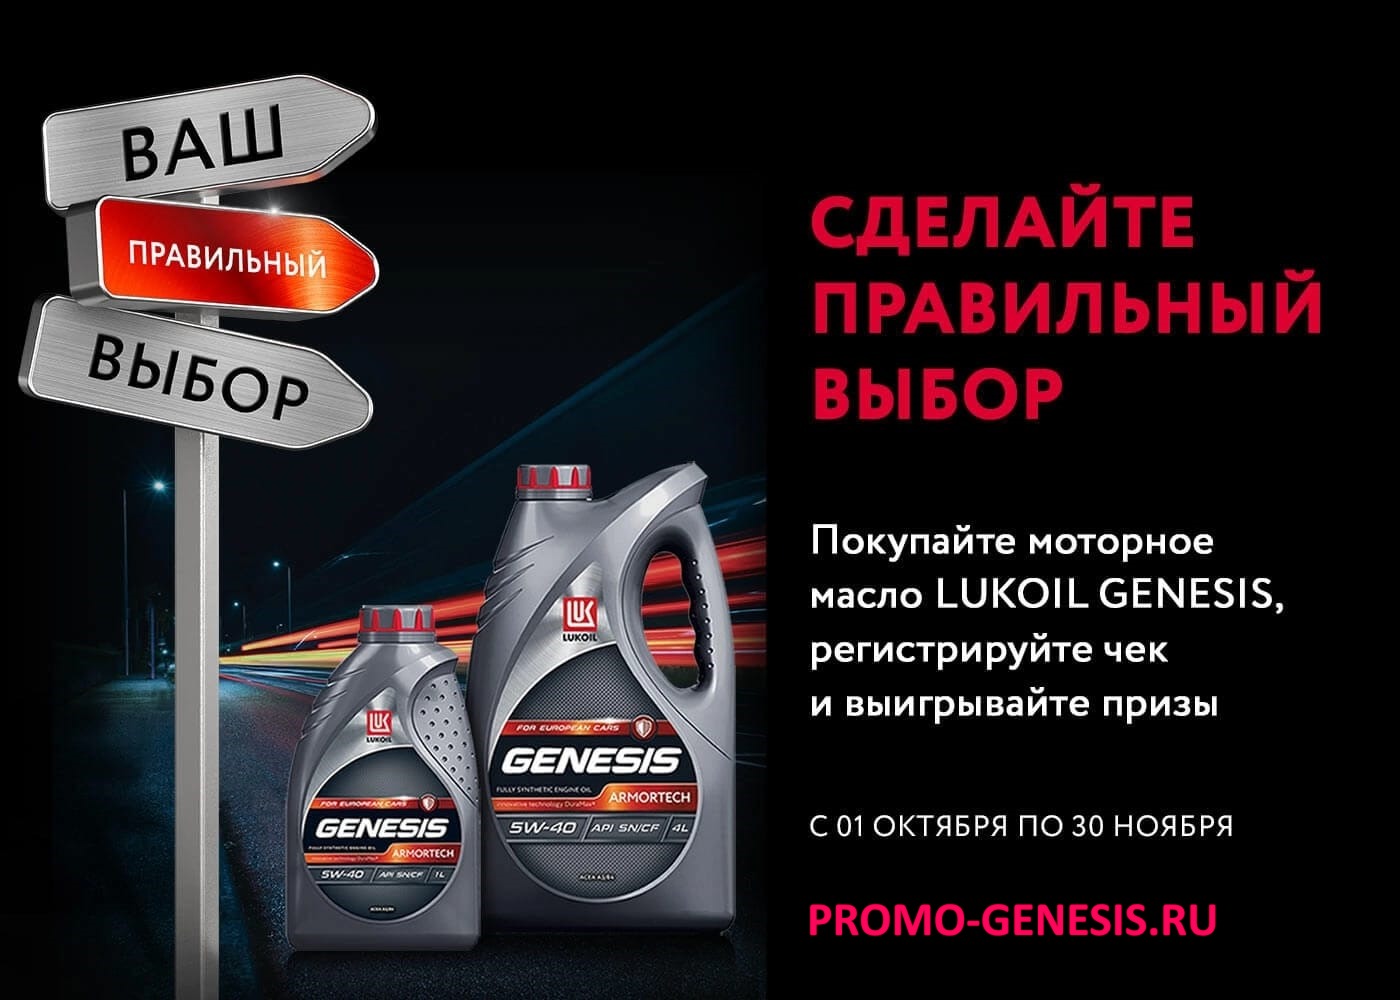 Покупайте моторное масло LUKOIL GENESIS и выигрывайте призы